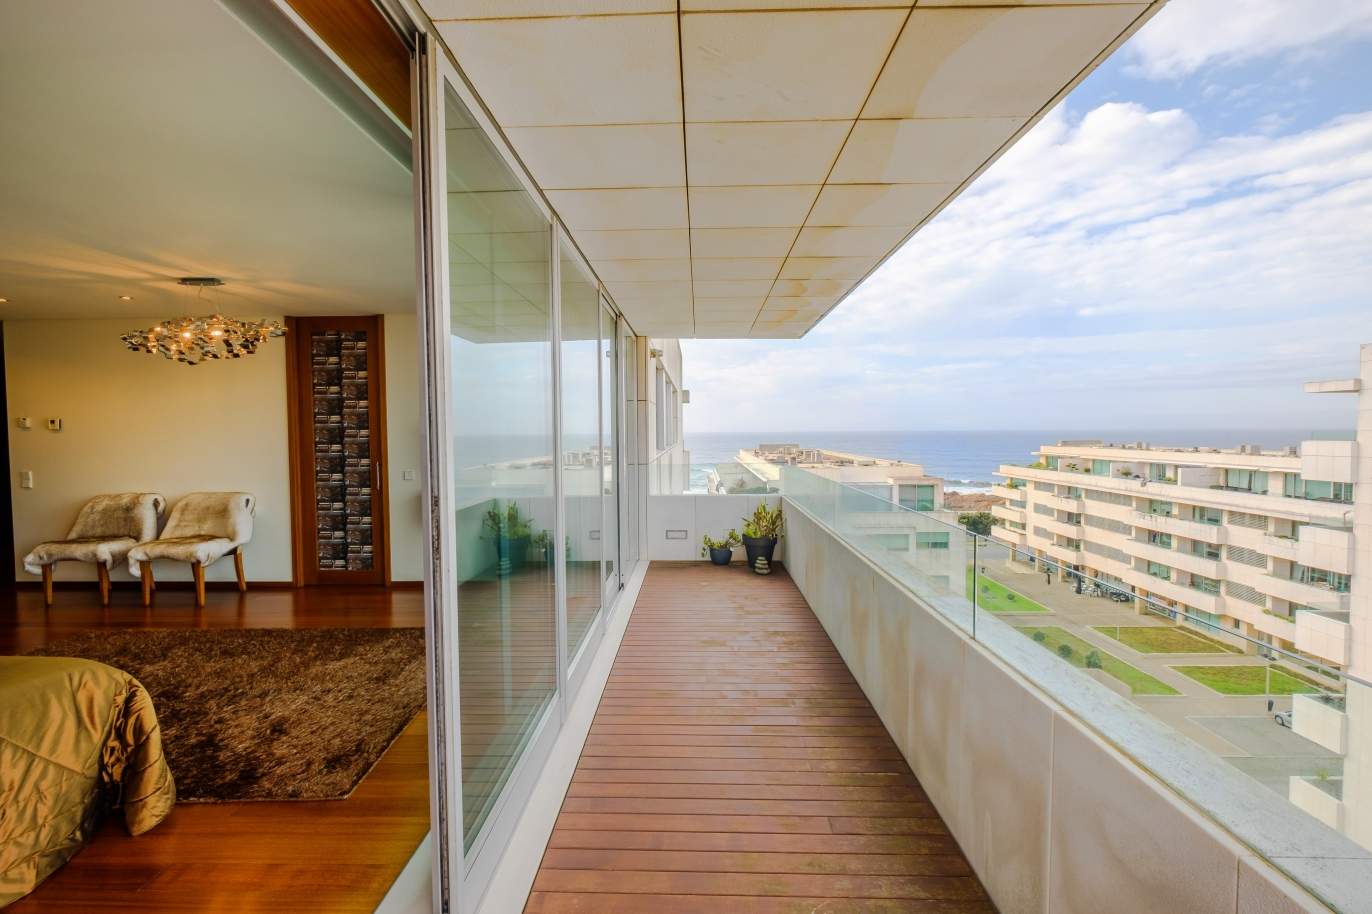 Venda de apartamento moderno, com vistas mar, Leça da Palmeira, Porto_156136